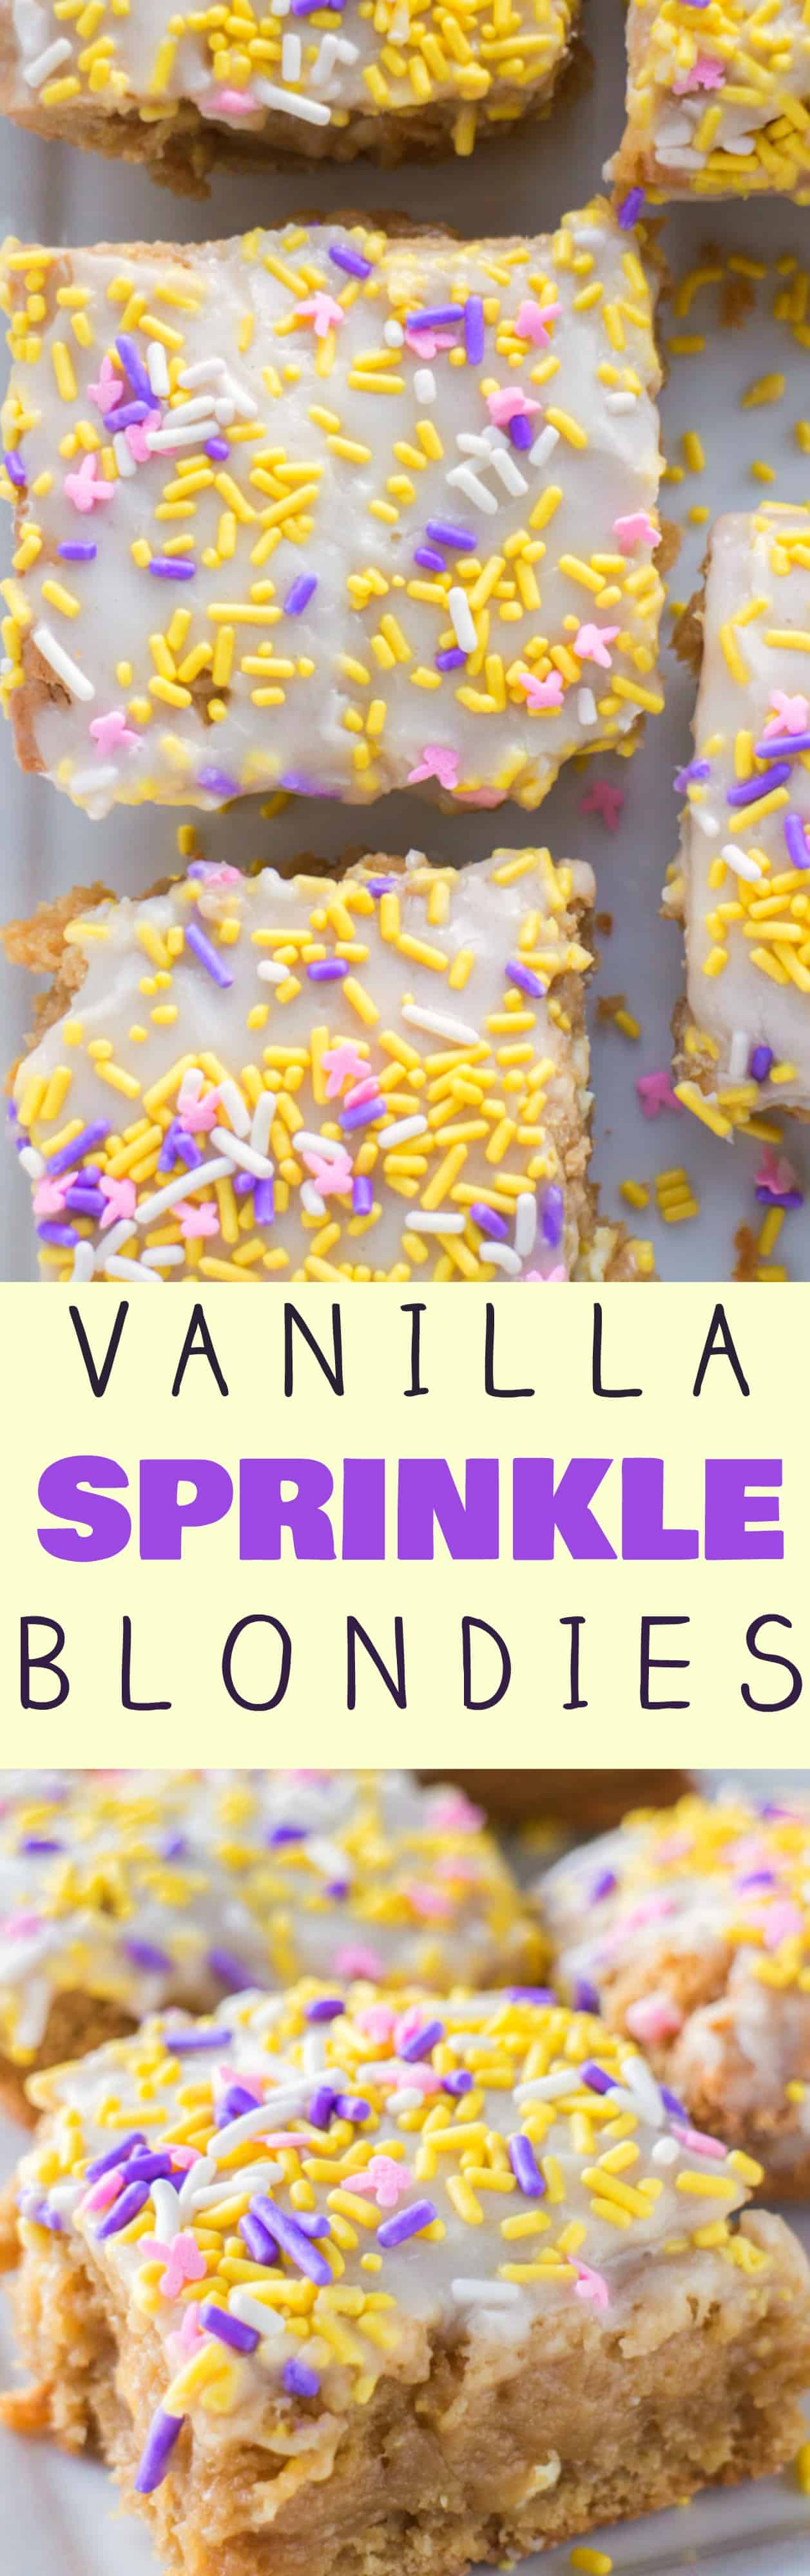 VANILLA Brownies with vanilla frosting and sprinkles on top is my favorite!  This easy dessert recipe makes fudgy, ooey gooey cake tasting vanilla blondies. 